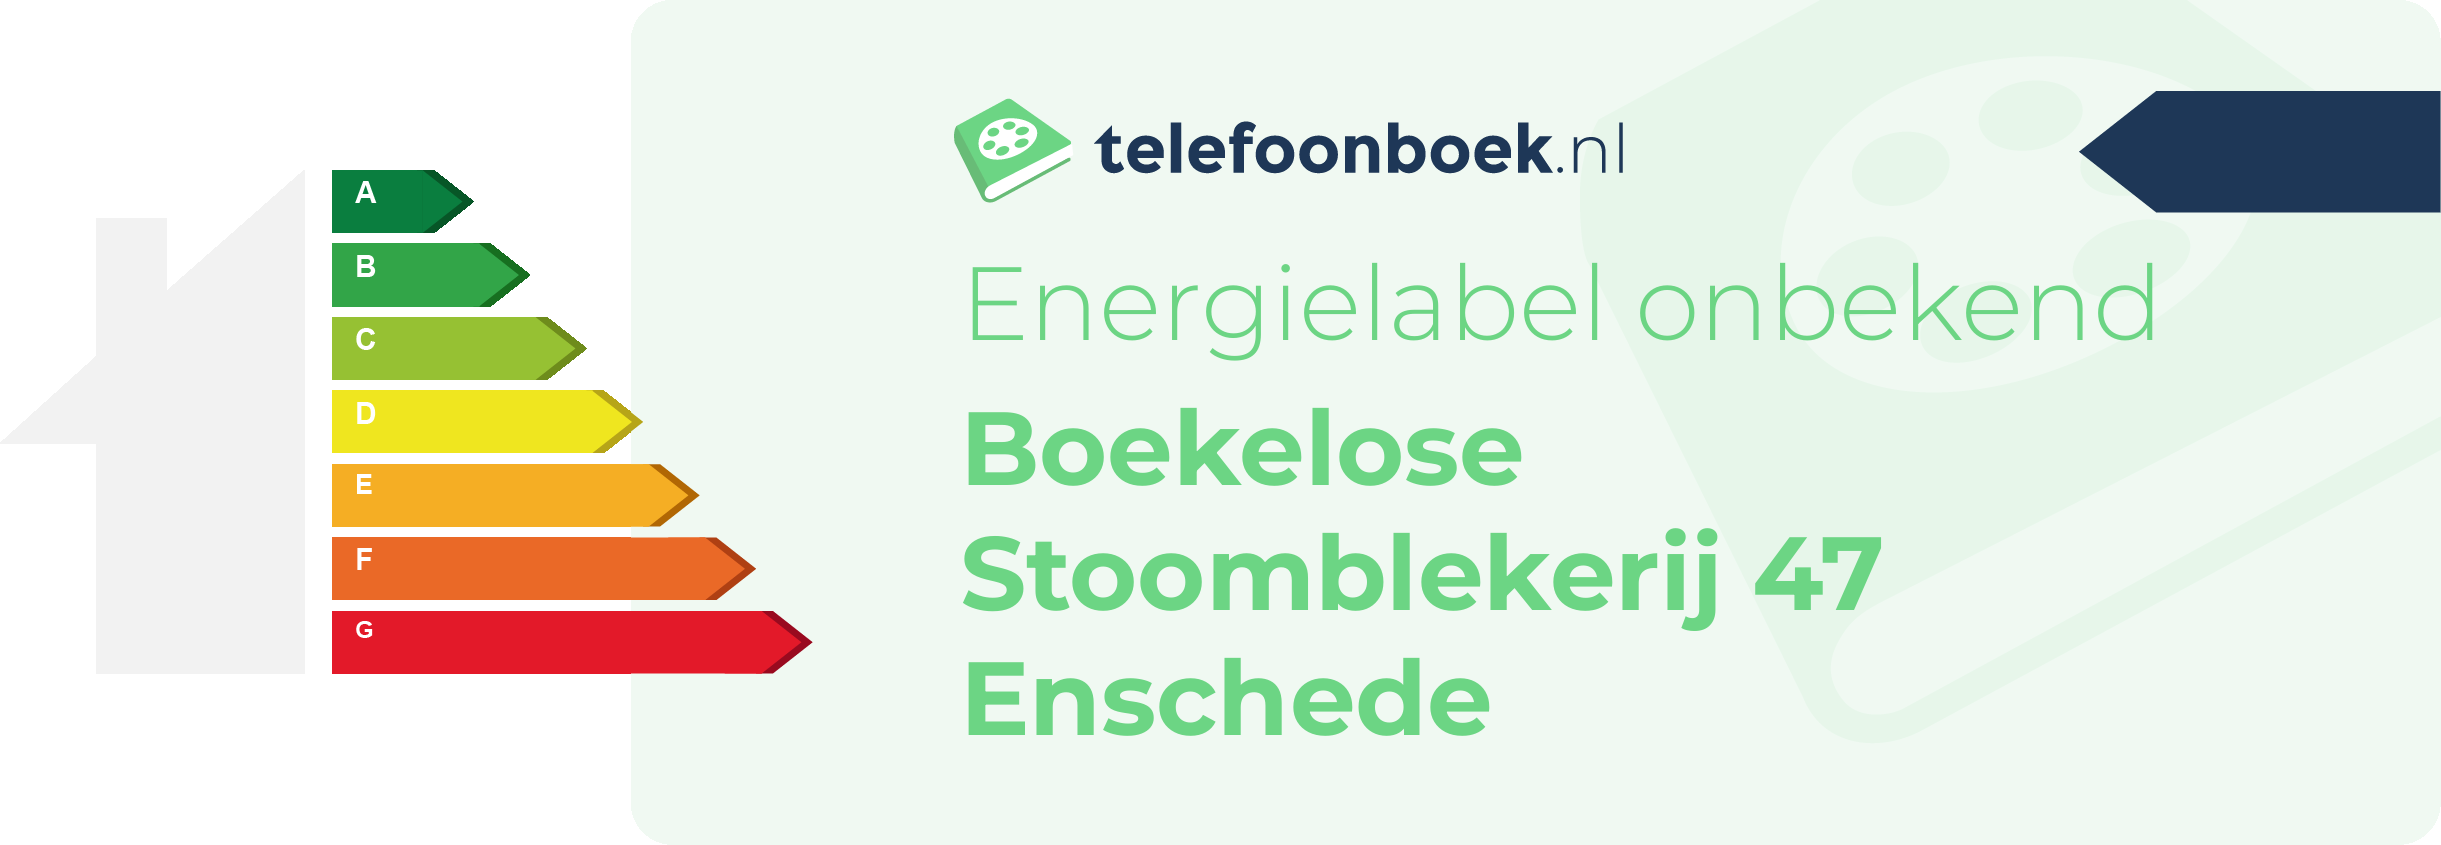 Energielabel Boekelose Stoomblekerij 47 Enschede